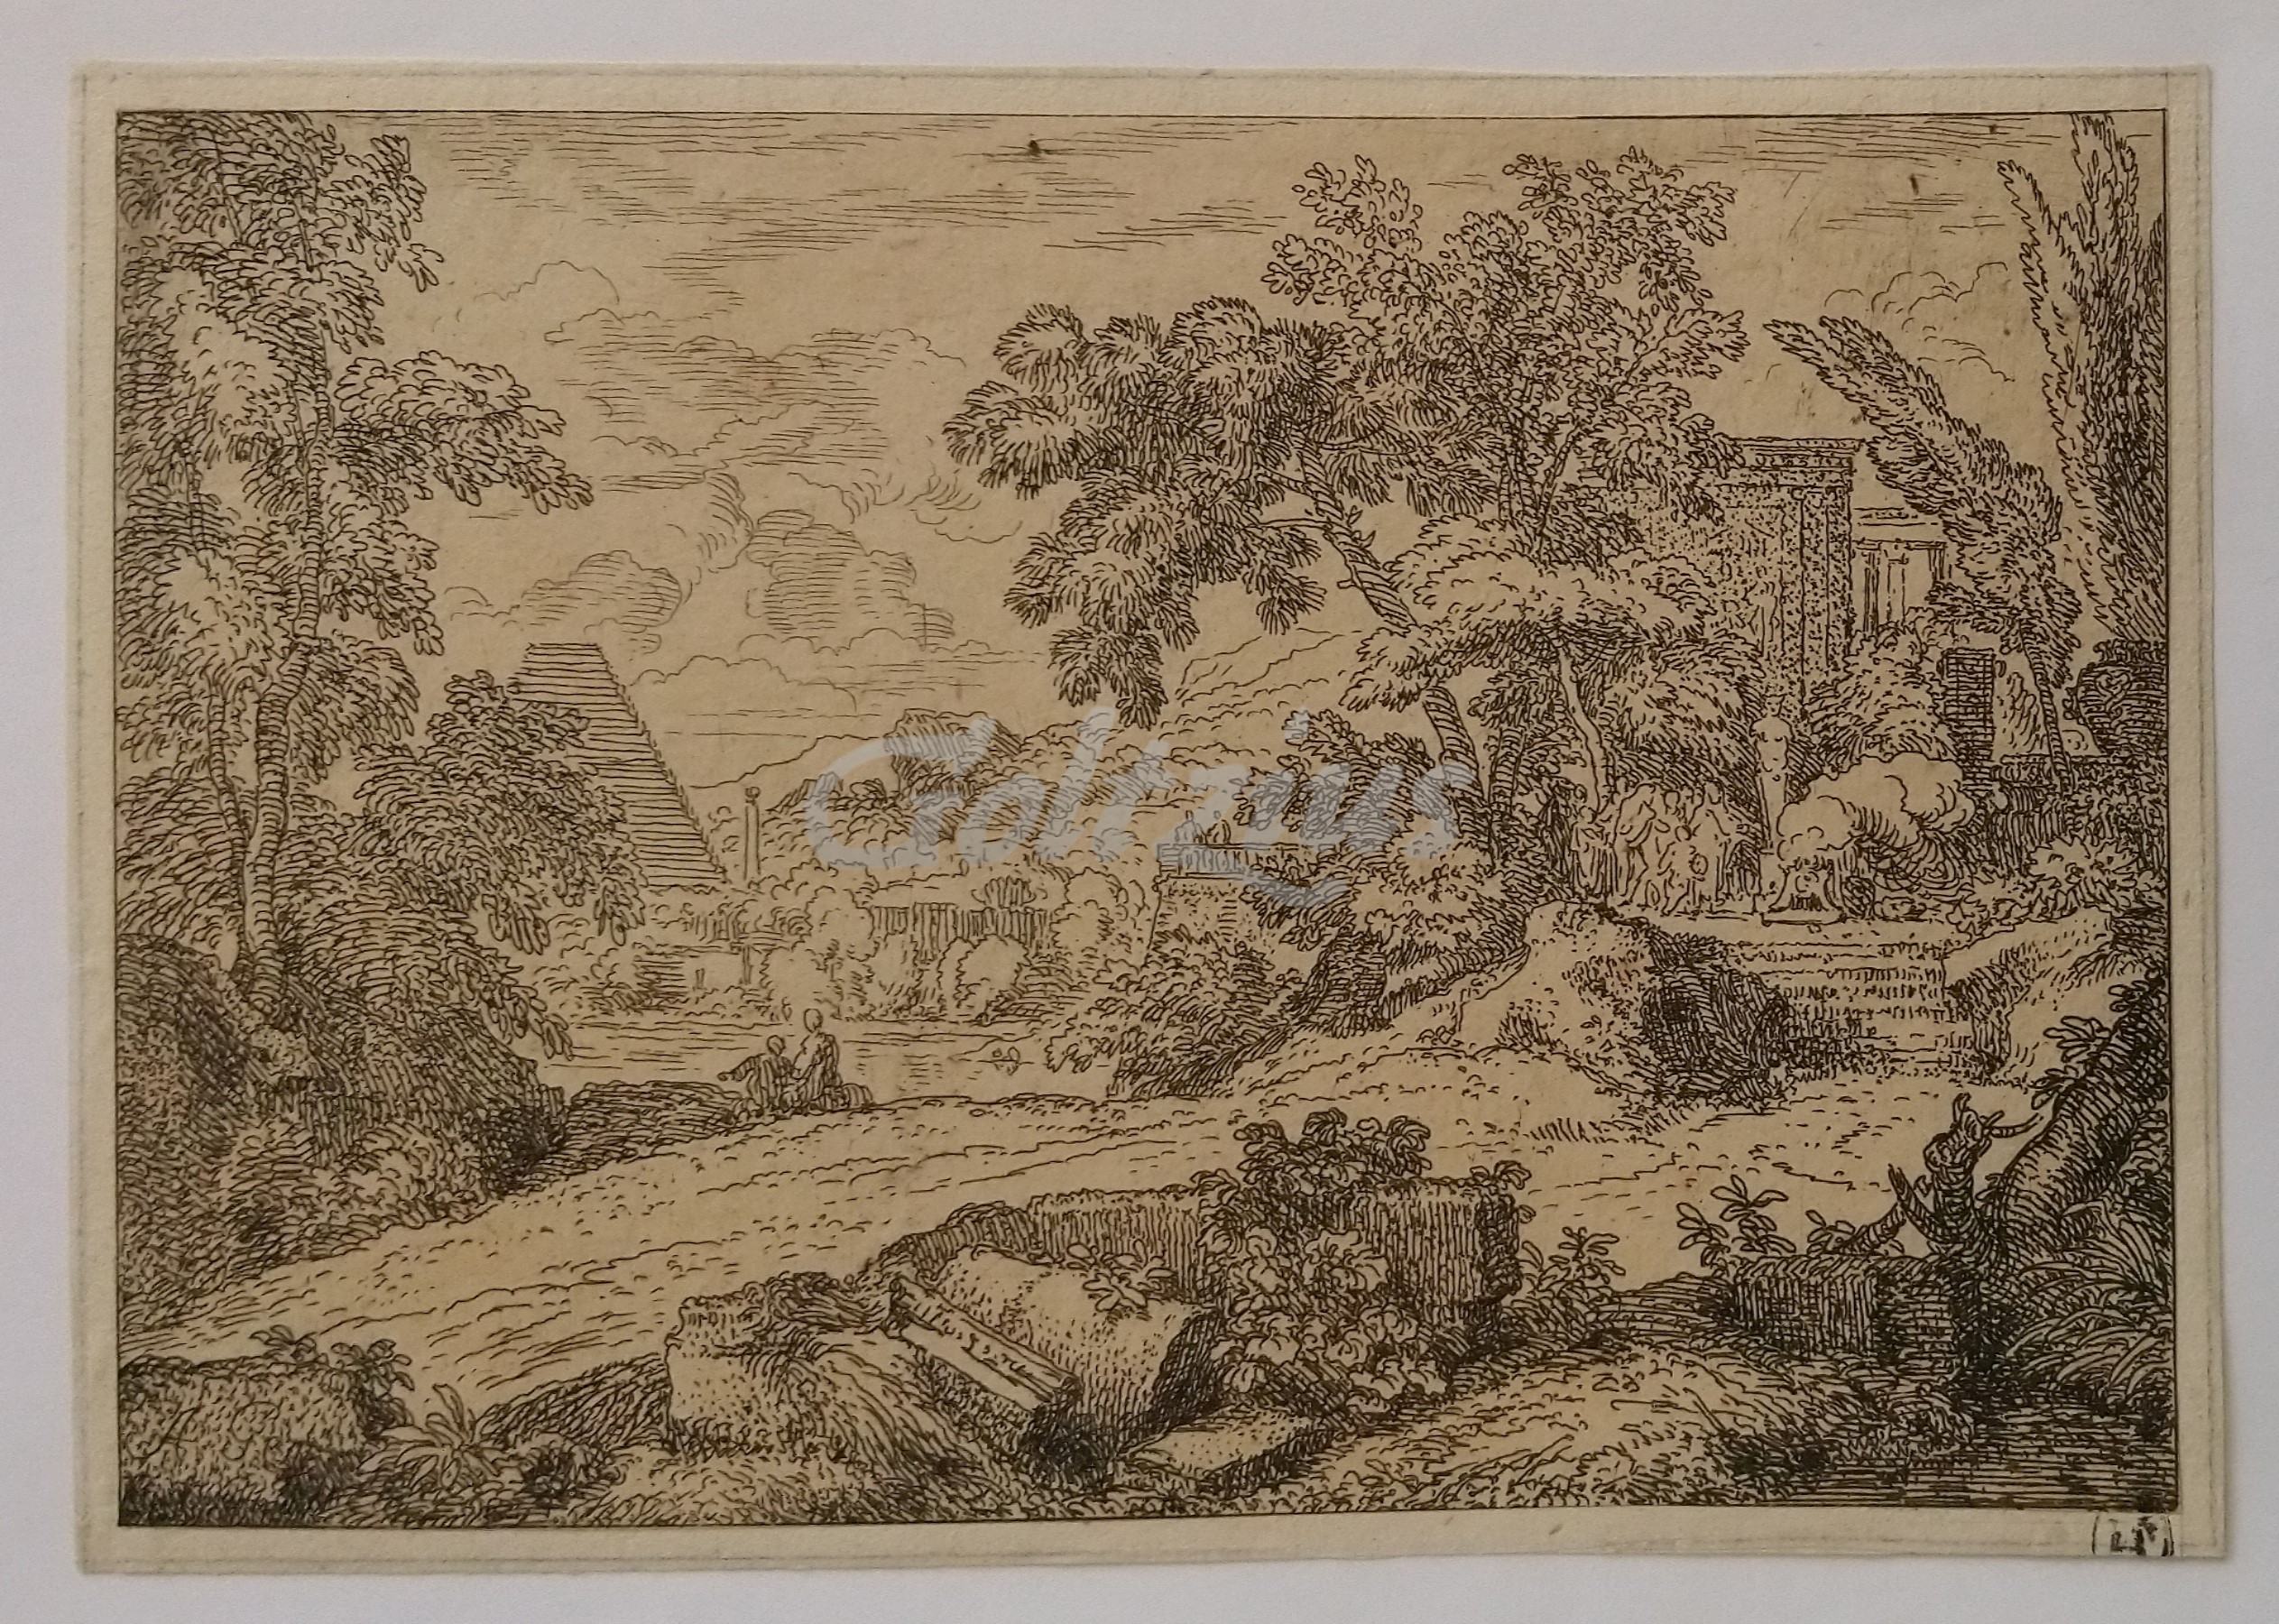 GENOELS, ABRAHAM, Landscape with offering